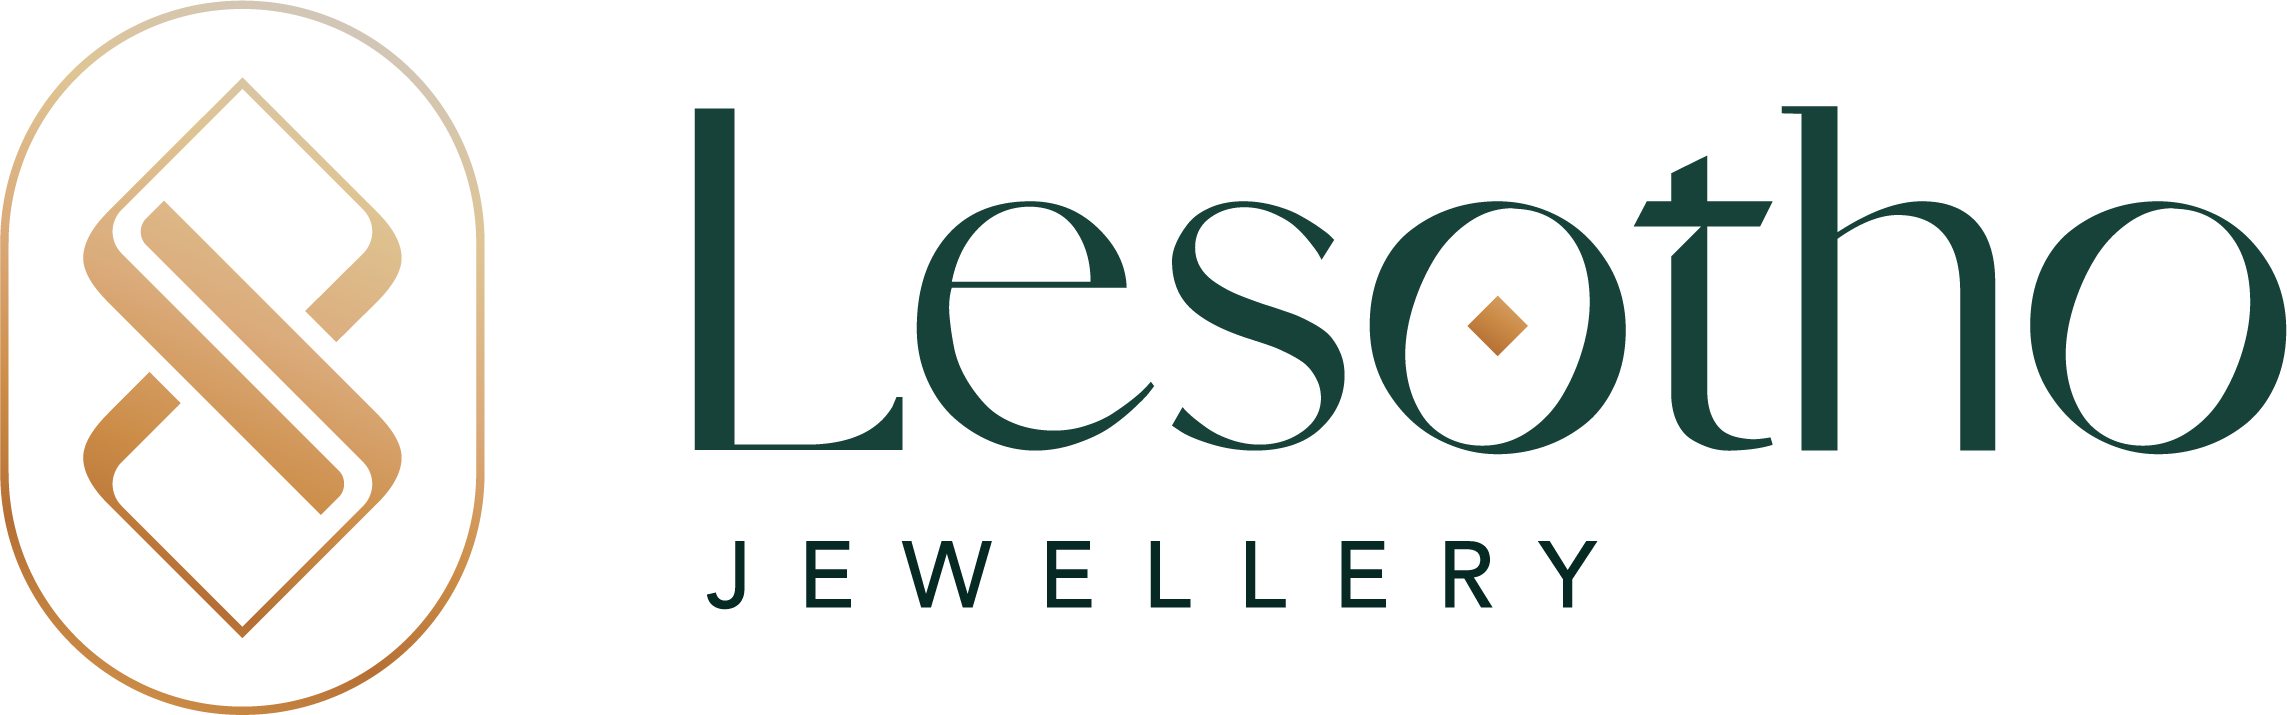 Lesotho Jewellery